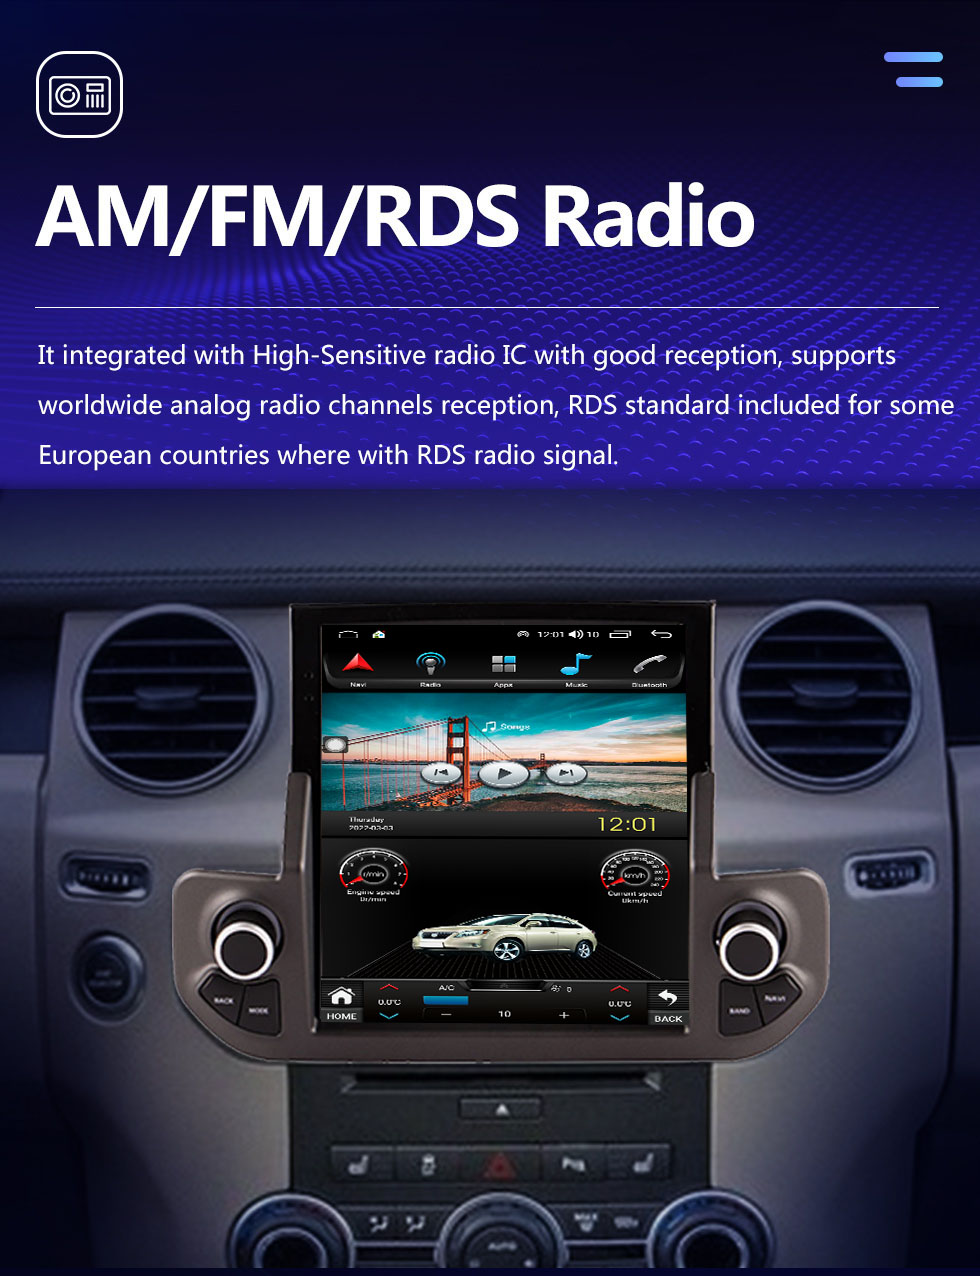 Seicane OEM 9.7 pulgadas Android 10.0 Radio para 2009-2016 Land Rover Discoverer 4 LR4 Bluetooth WIFI HD Pantalla táctil Navegación GPS con bluetooth Carplay compatible con cámara AHD